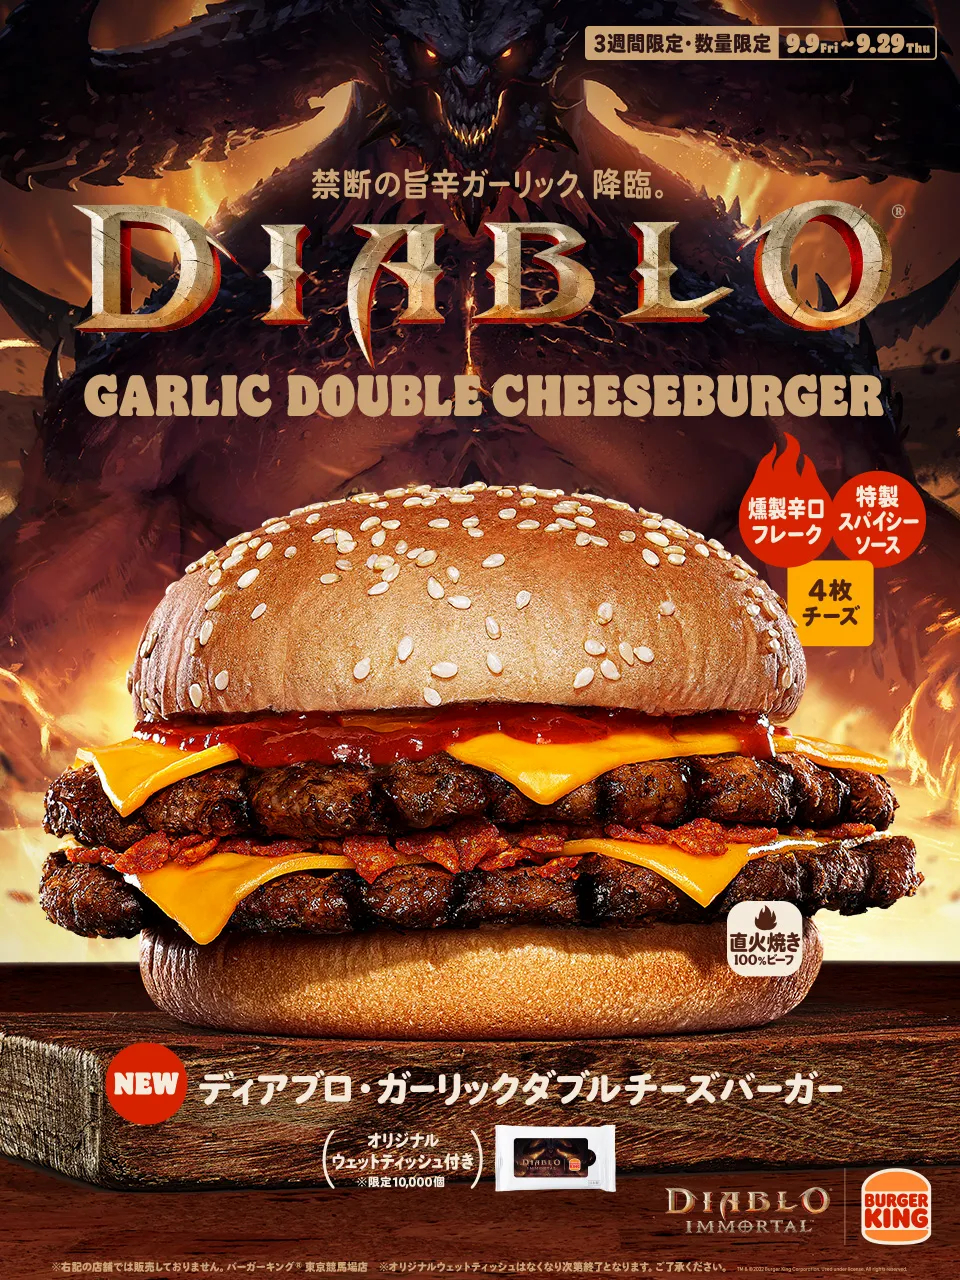 В японском Burger King можно купить чизбургер Diablo